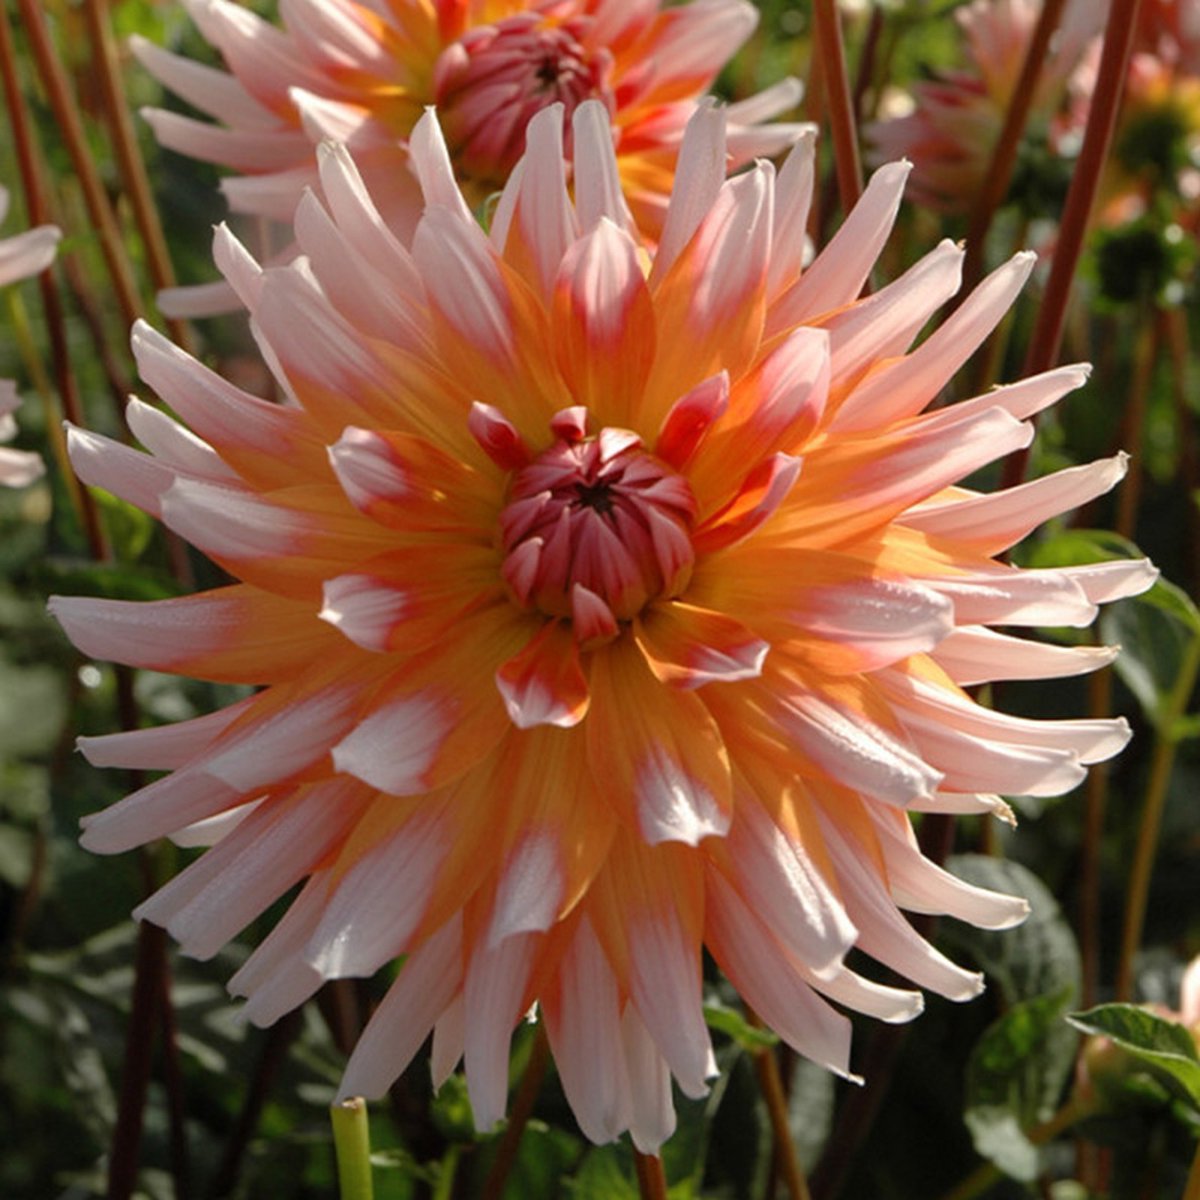 Dahlia Okapi's Sunset | 1 stuk | Cactus Dahlia | Knol | Snijbloem | Geel | Gemengde Kleuren | Oranje | Dahlia Knollen van Top Kwaliteit | 100% Bloeigarantie | QFB Gardening